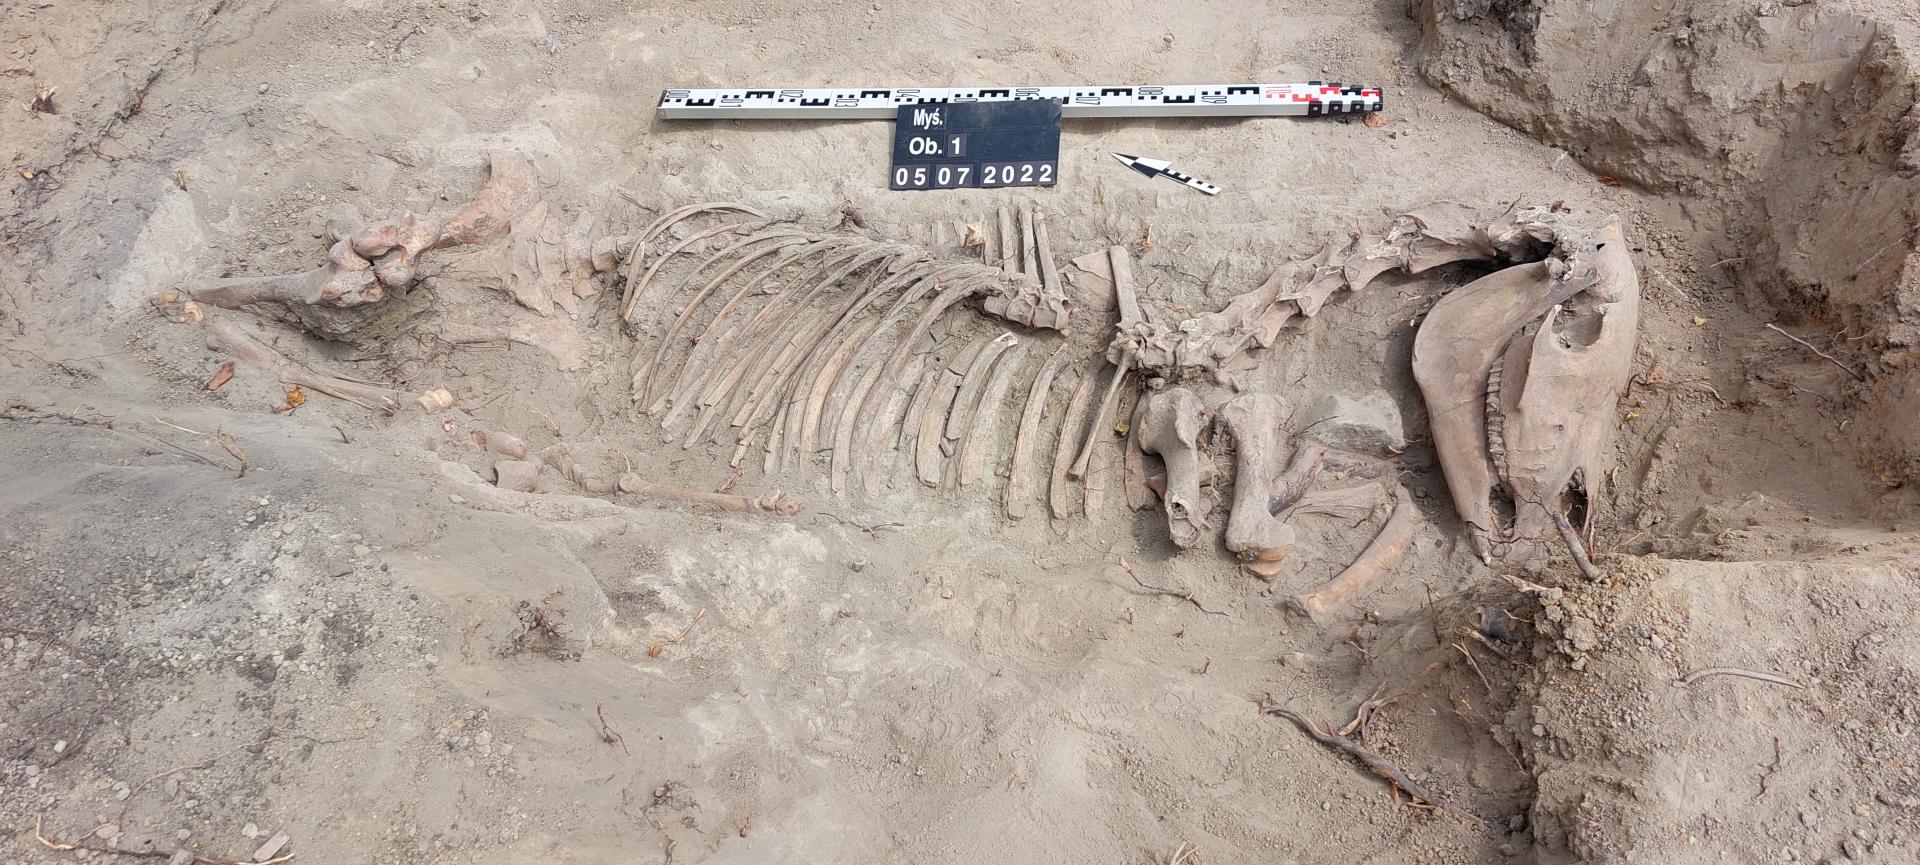 szkielet konia odnaleziony pod ziemią